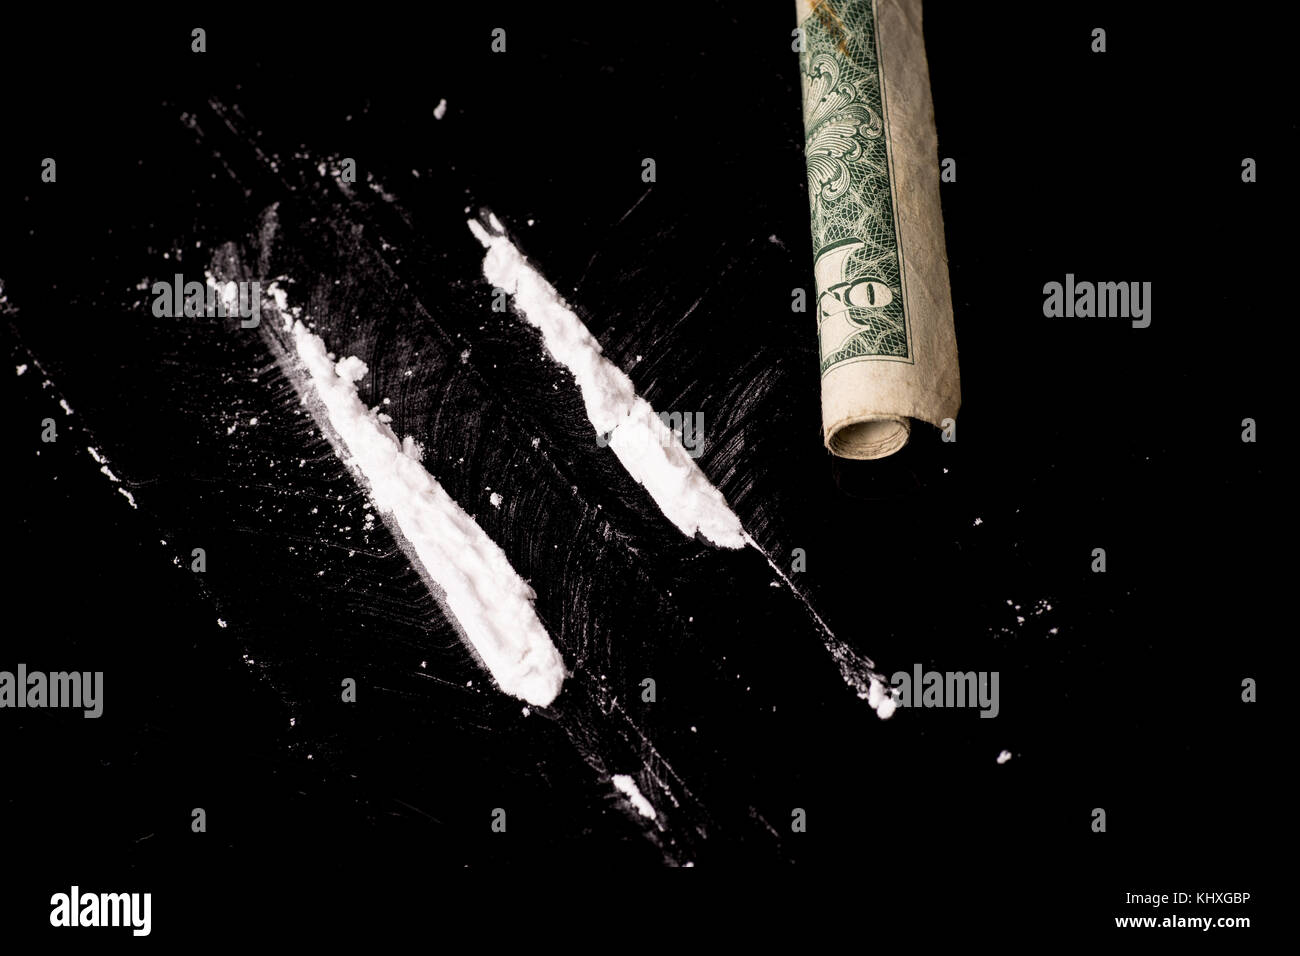 La cocaïne ou d'autres drogues illicites qui sont détectées au moyen d'un tube, isolé sur fond noir brillant Banque D'Images